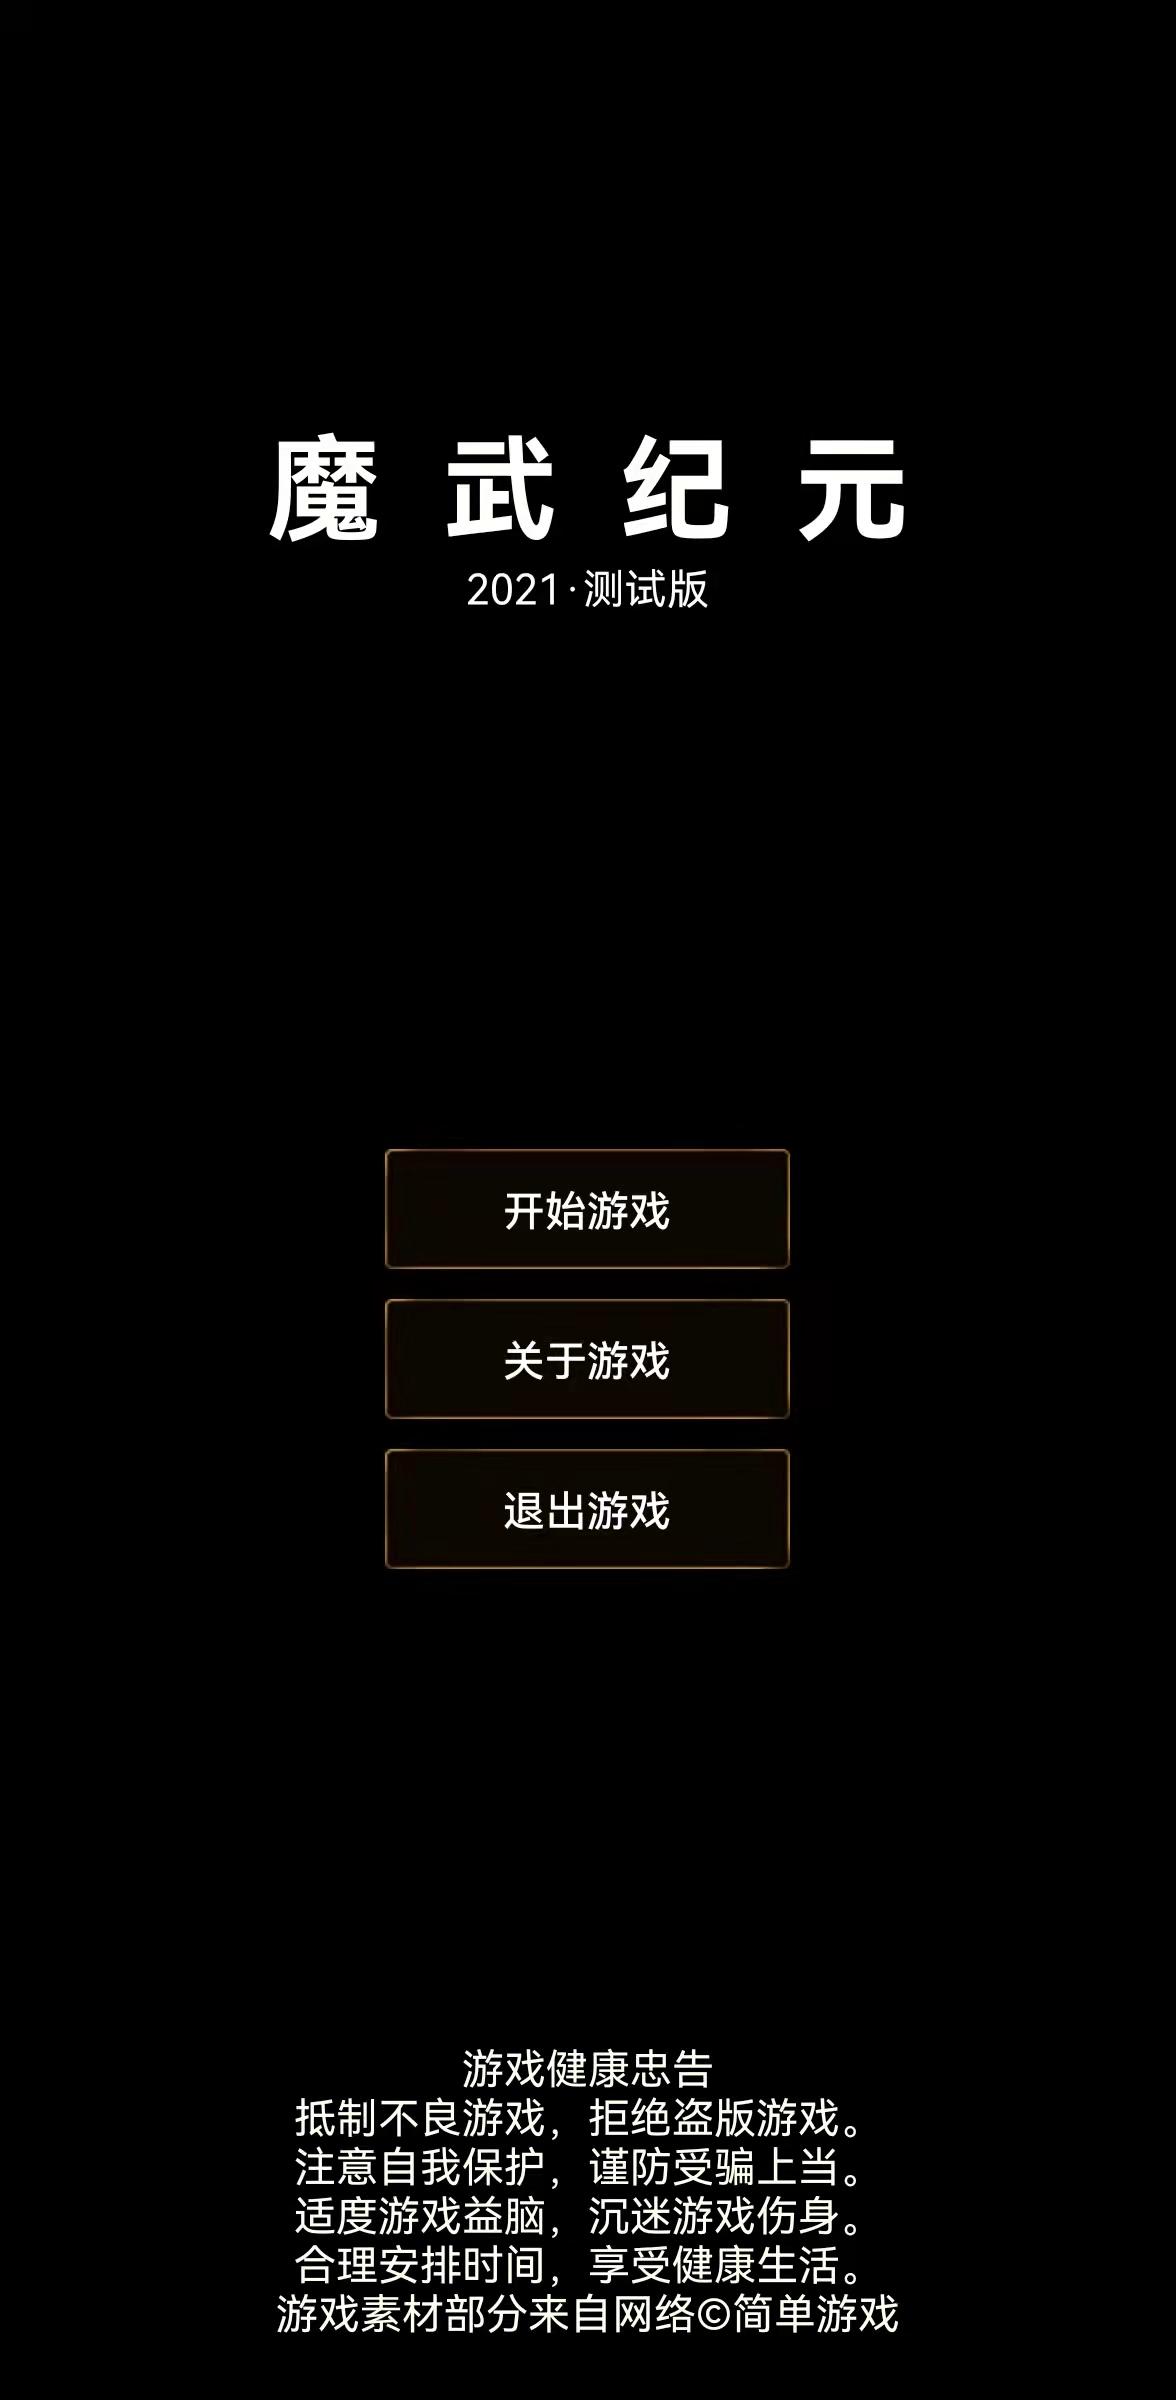 Screenshot 1 of Mo Wu: Eternal 23.9.20